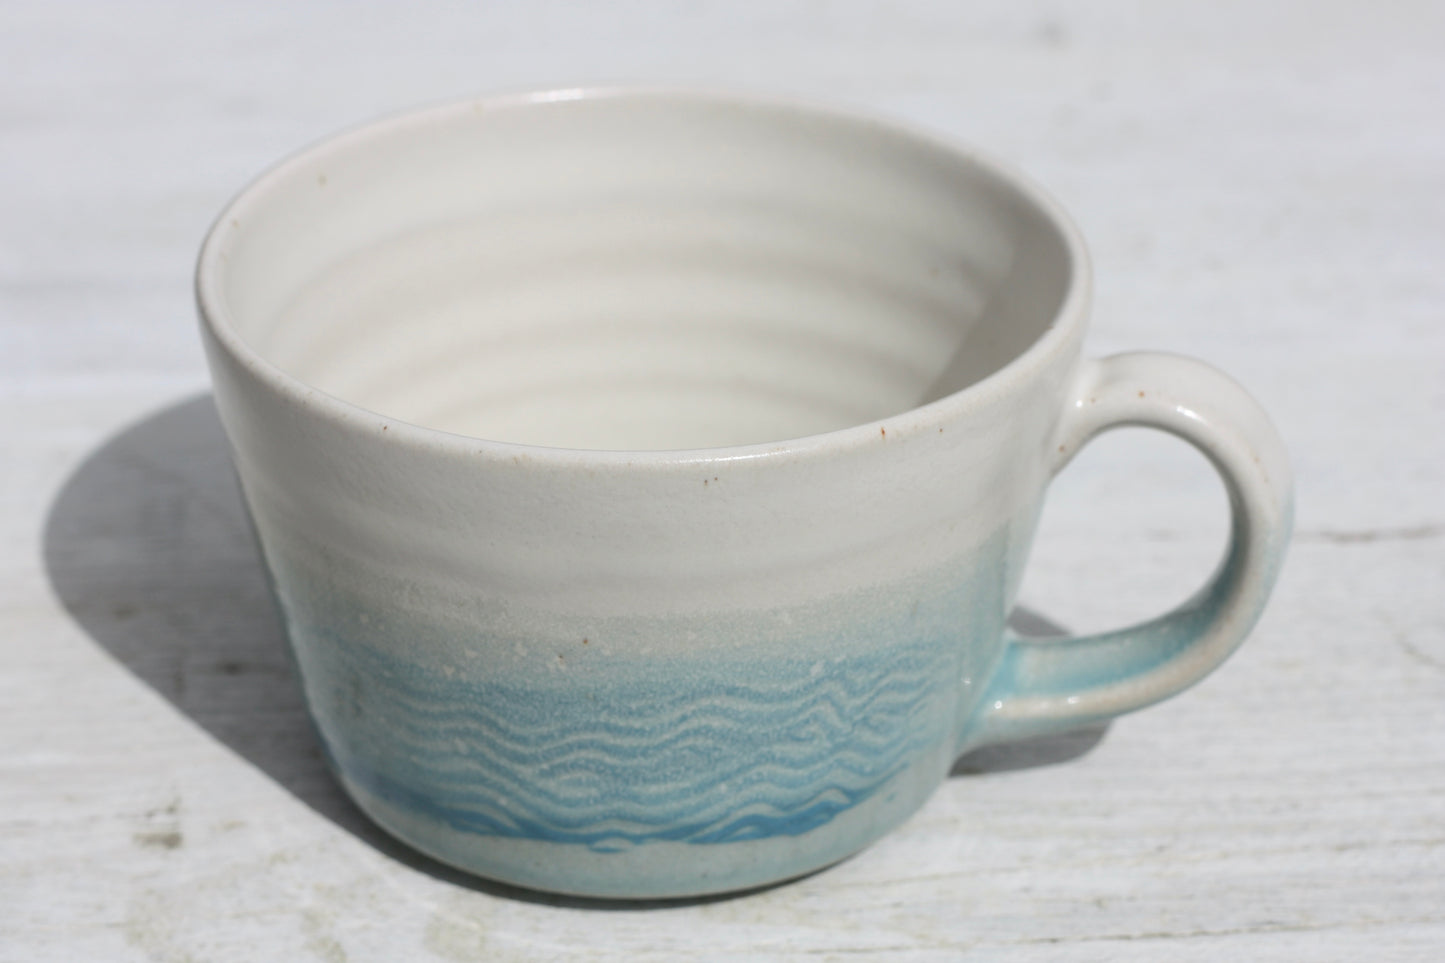 Cornish waves glazed Mug 14oz 400ml Medium Mug in Blue and White Glaze